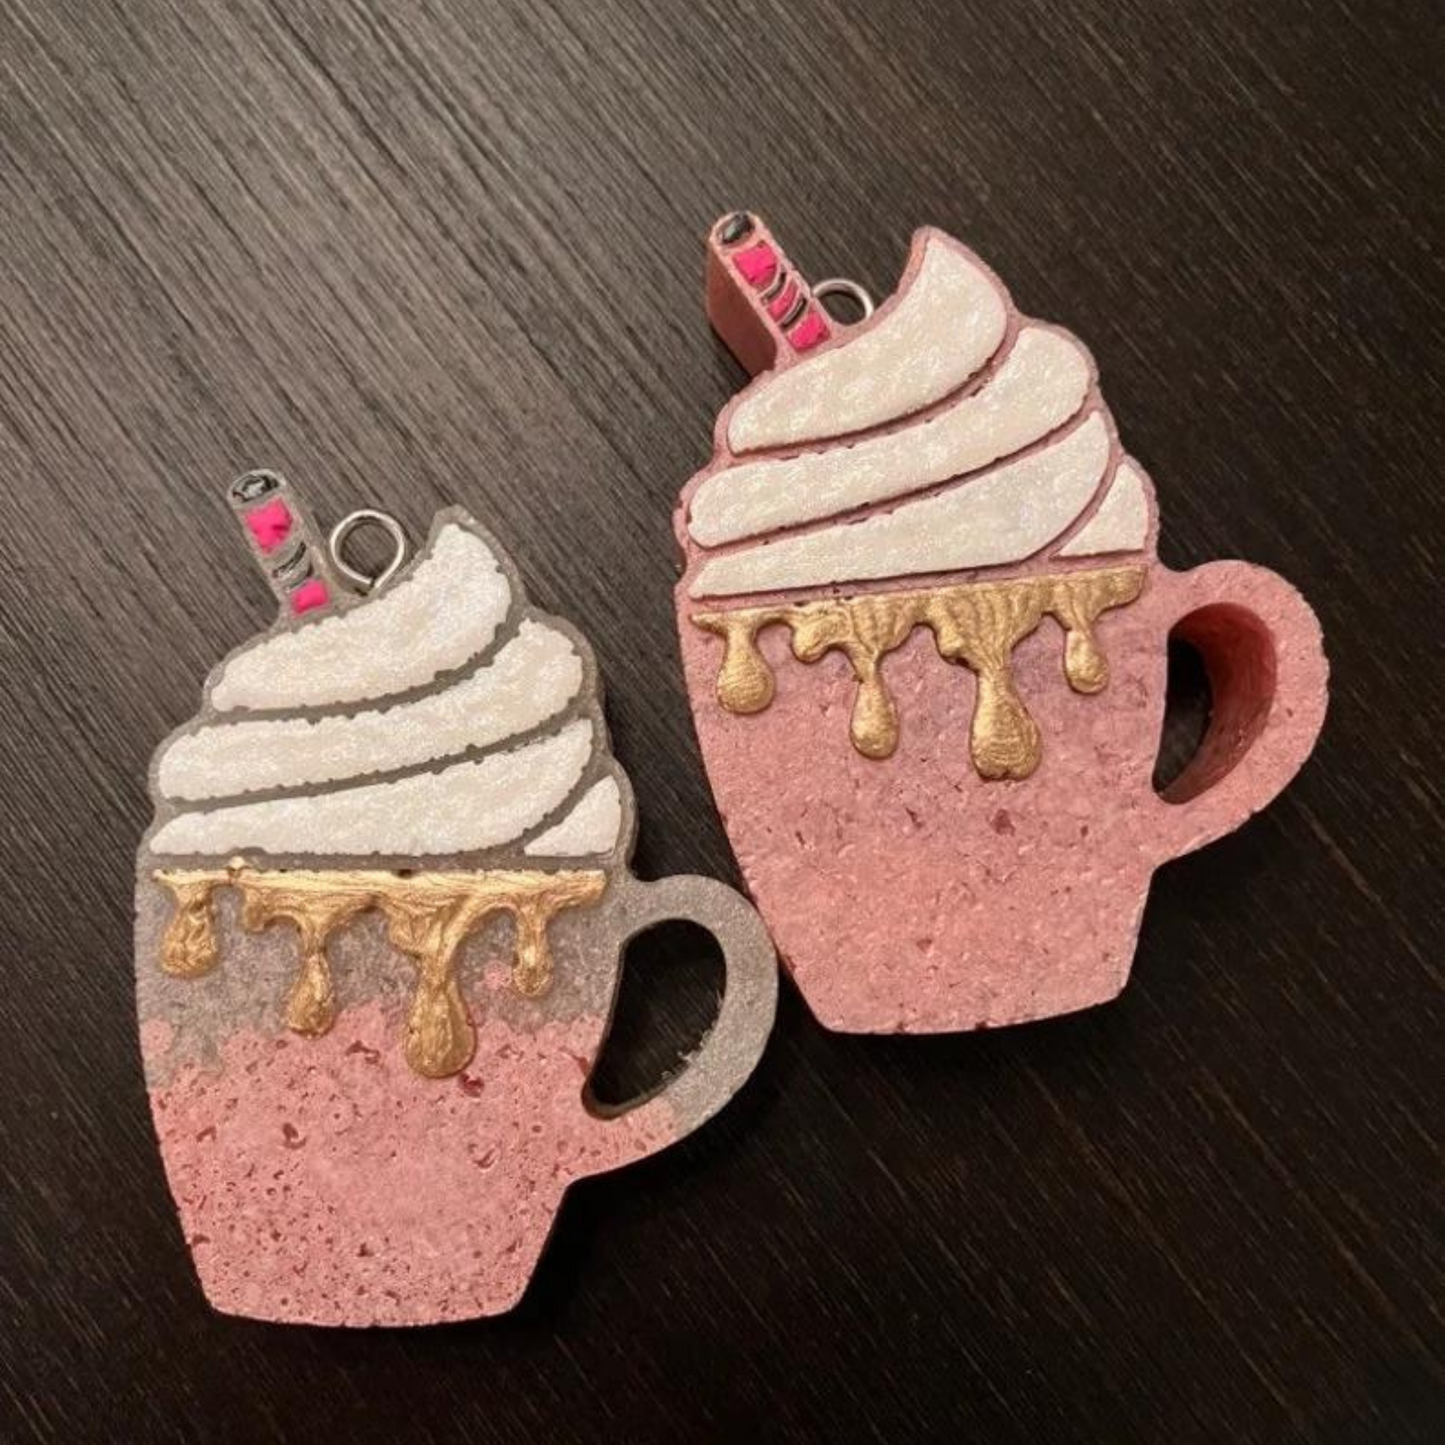 Frappuccino Hot Cocoa Mug Silcone Mold- Vent Clip